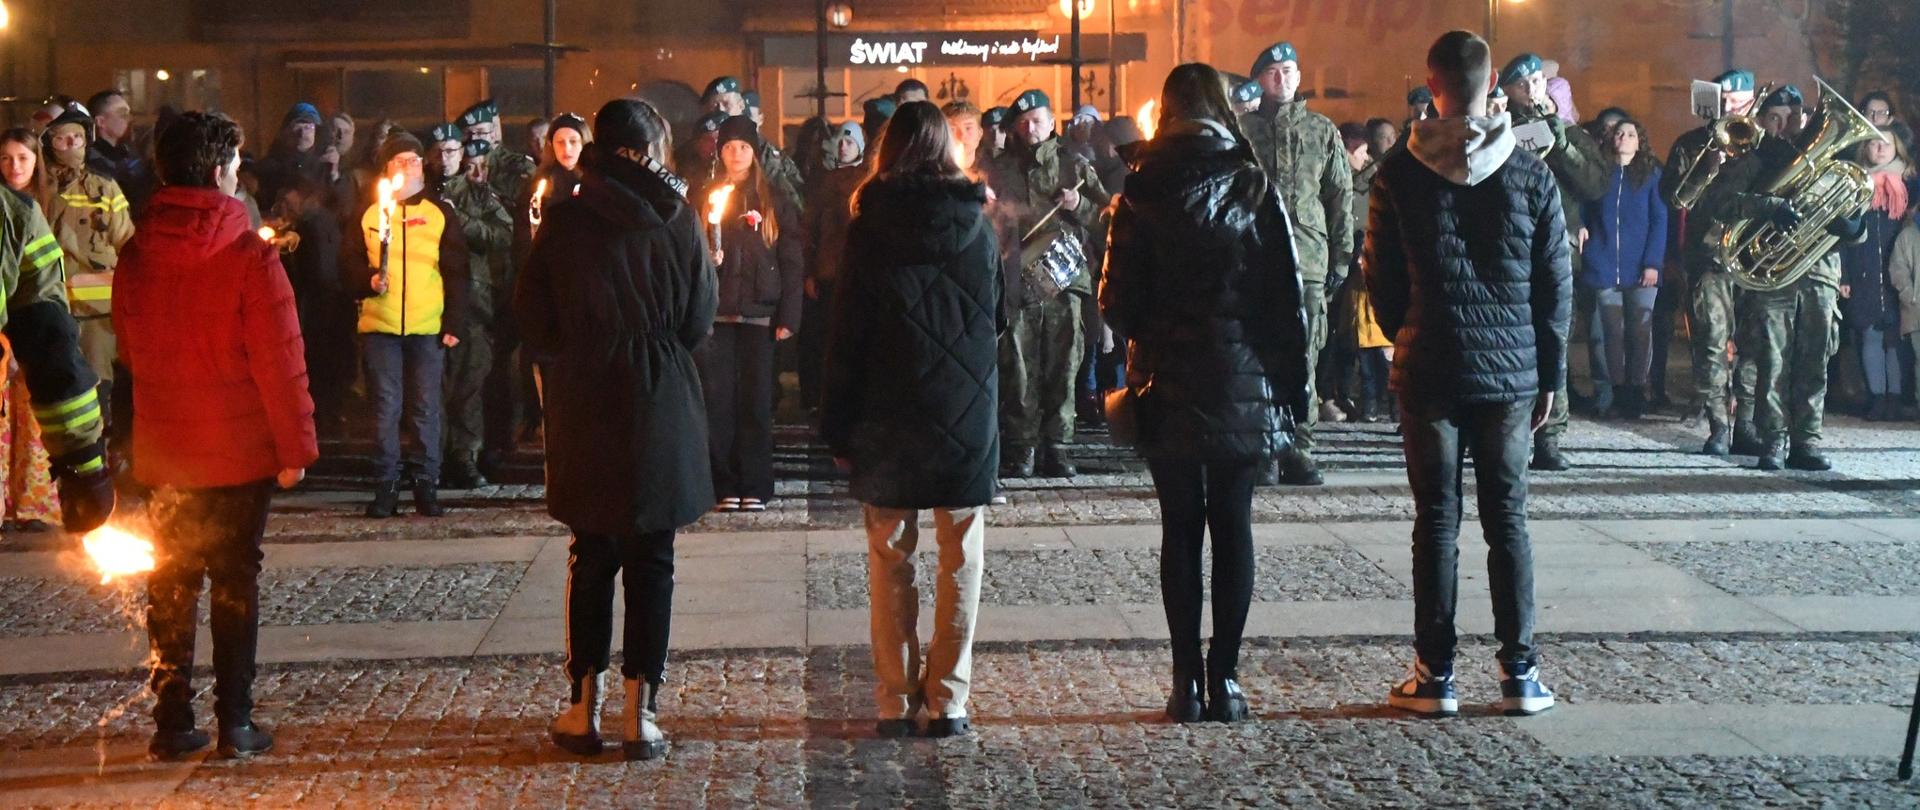 Wydarzenie na zewnątrz, publiczność wraz z wojskową orkiestrą stoją przed pomnikiem, przed nimi, zwróceni tyłem stoją dzieci trzymające pochodnie.